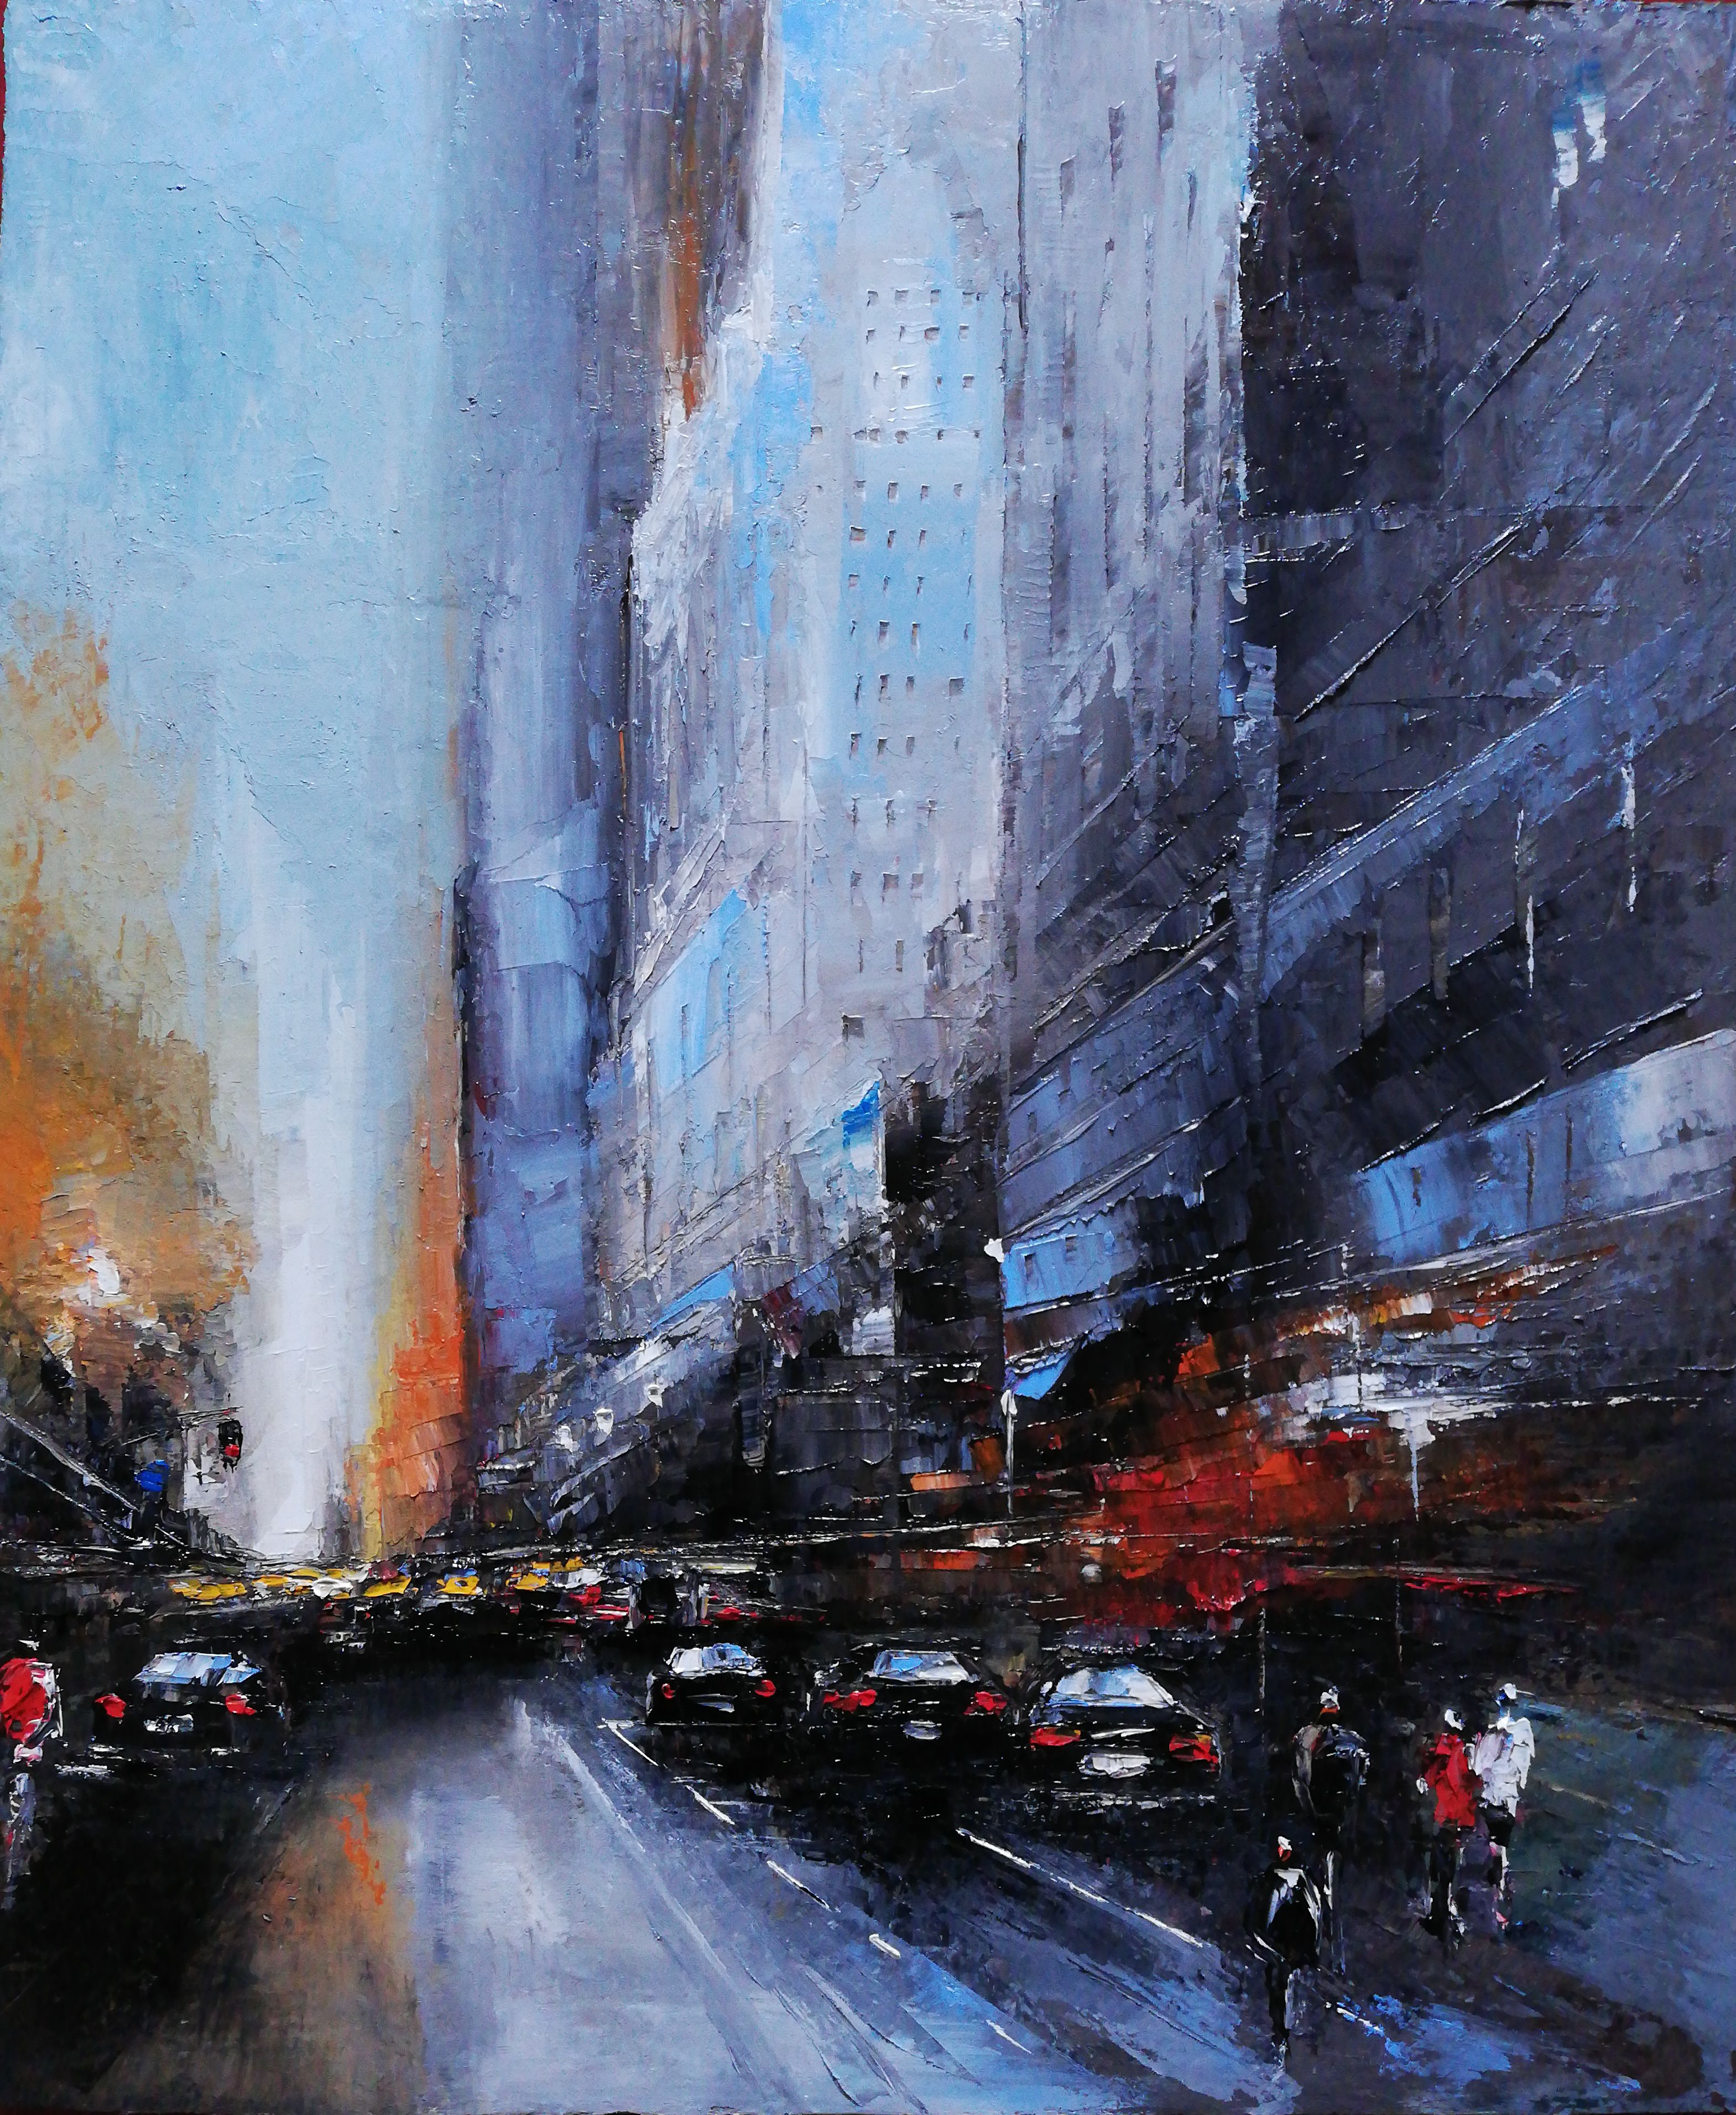 Philippe Meslin "Manhattan traffic Huile sur lin" tableau, est une peinture à l'huile figurative en couleur d'une scène de rue de Manhattan